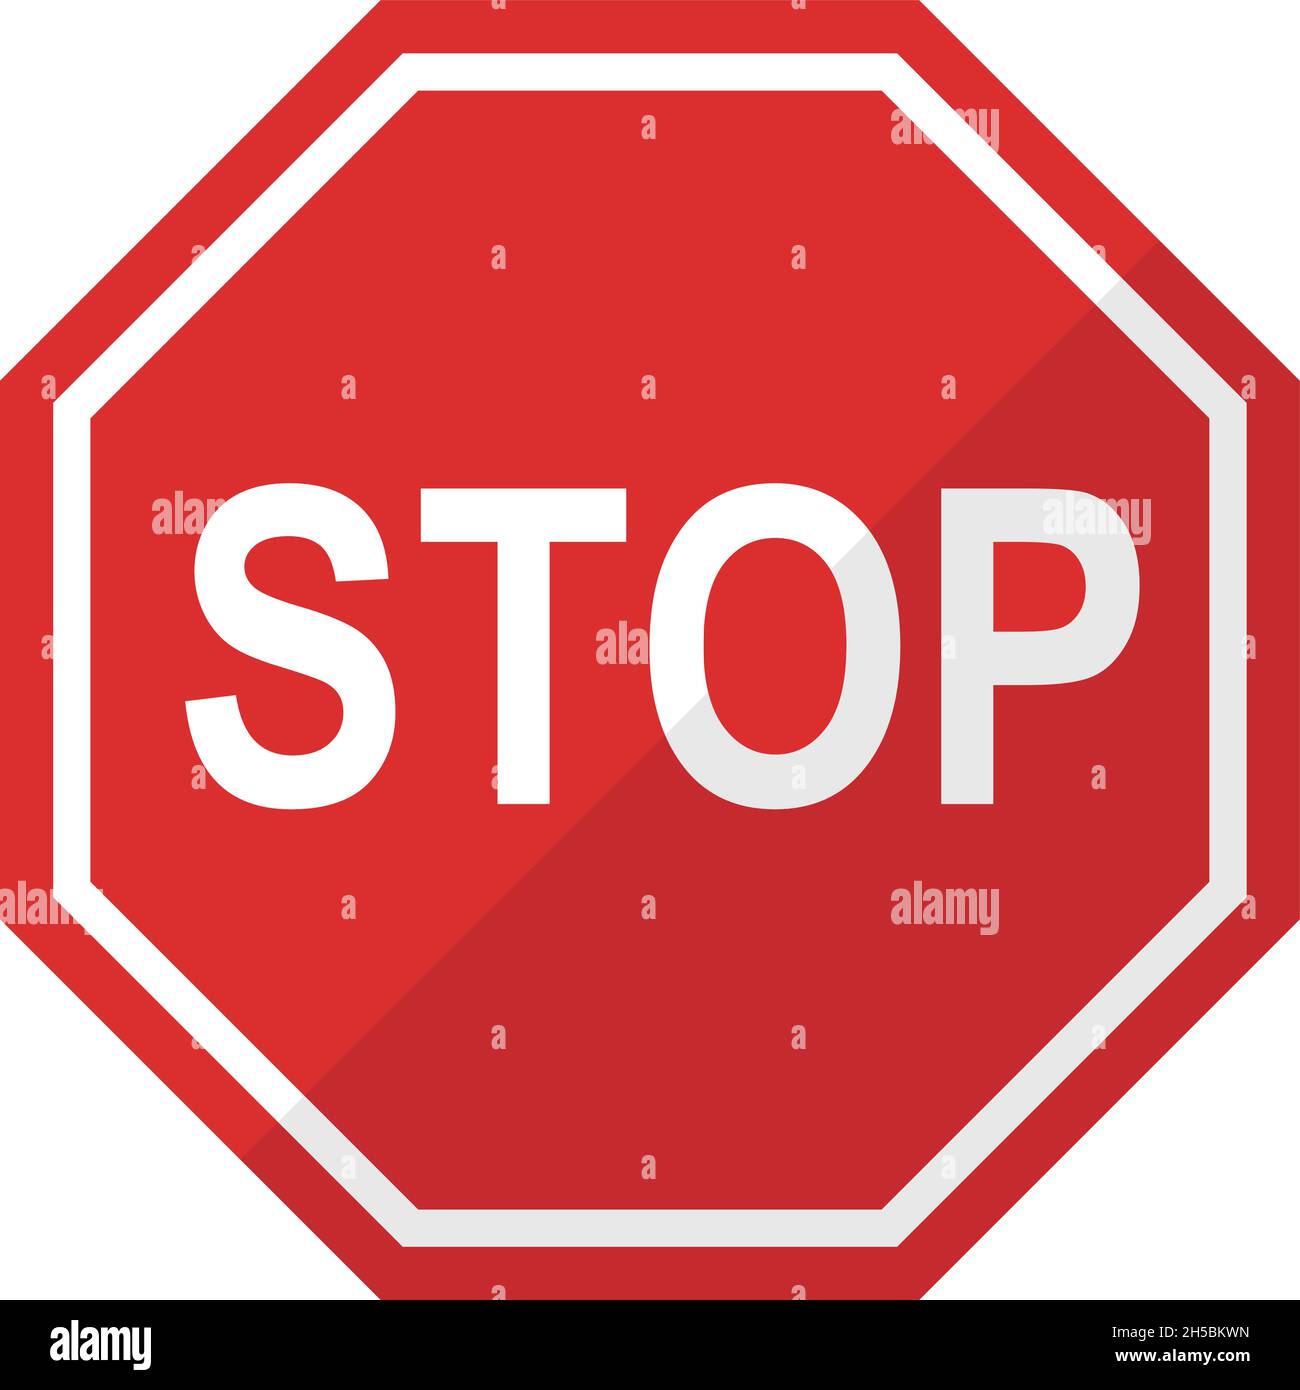 Une icône d'arrêt simple.Il peut être utilisé non seulement pour la circulation, mais aussi pour les scènes d'avertissement, de prudence et d'interdiction. Illustration de Vecteur